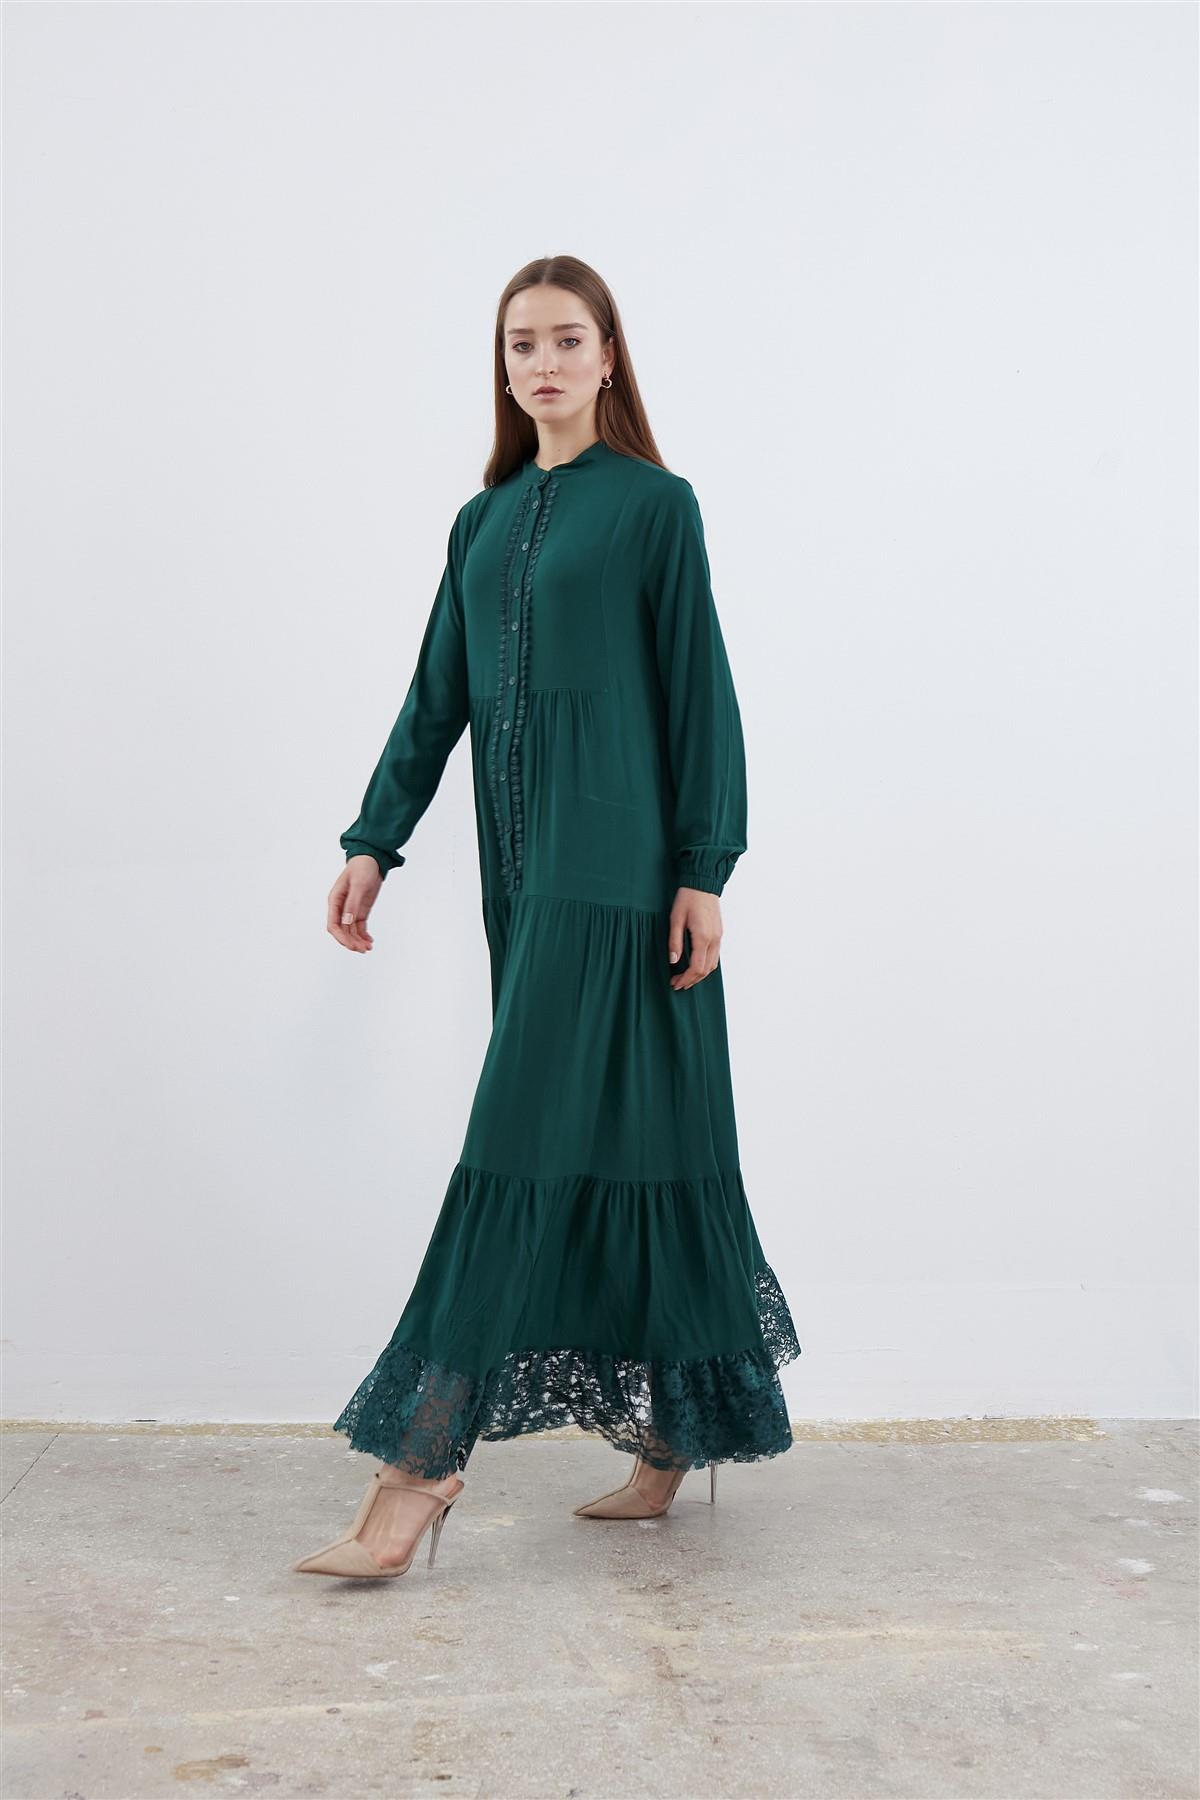 Etek Ucu Dantel Detaylı Elbise Zümrüt Yeşili